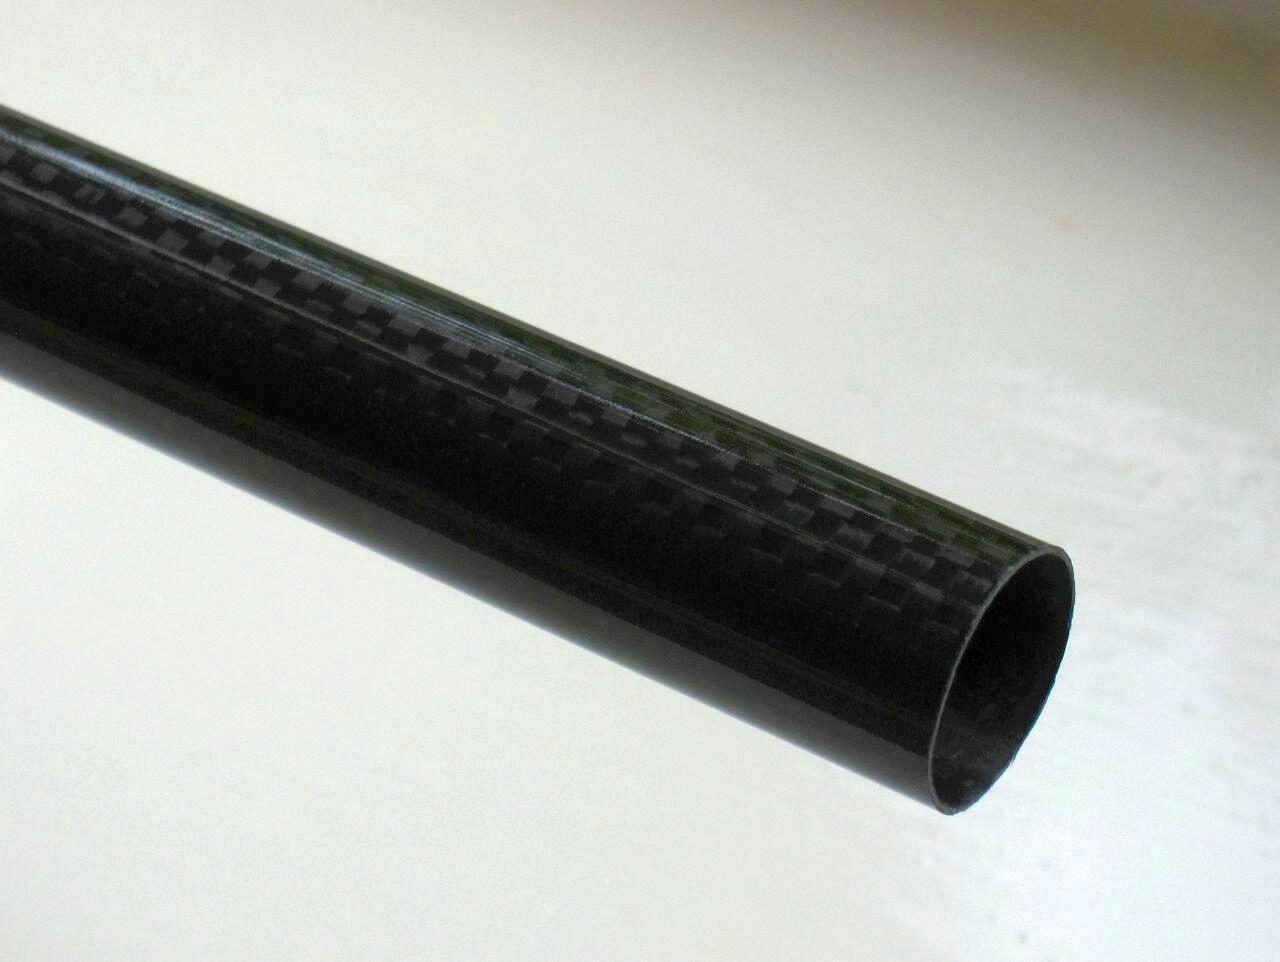 Thin tube